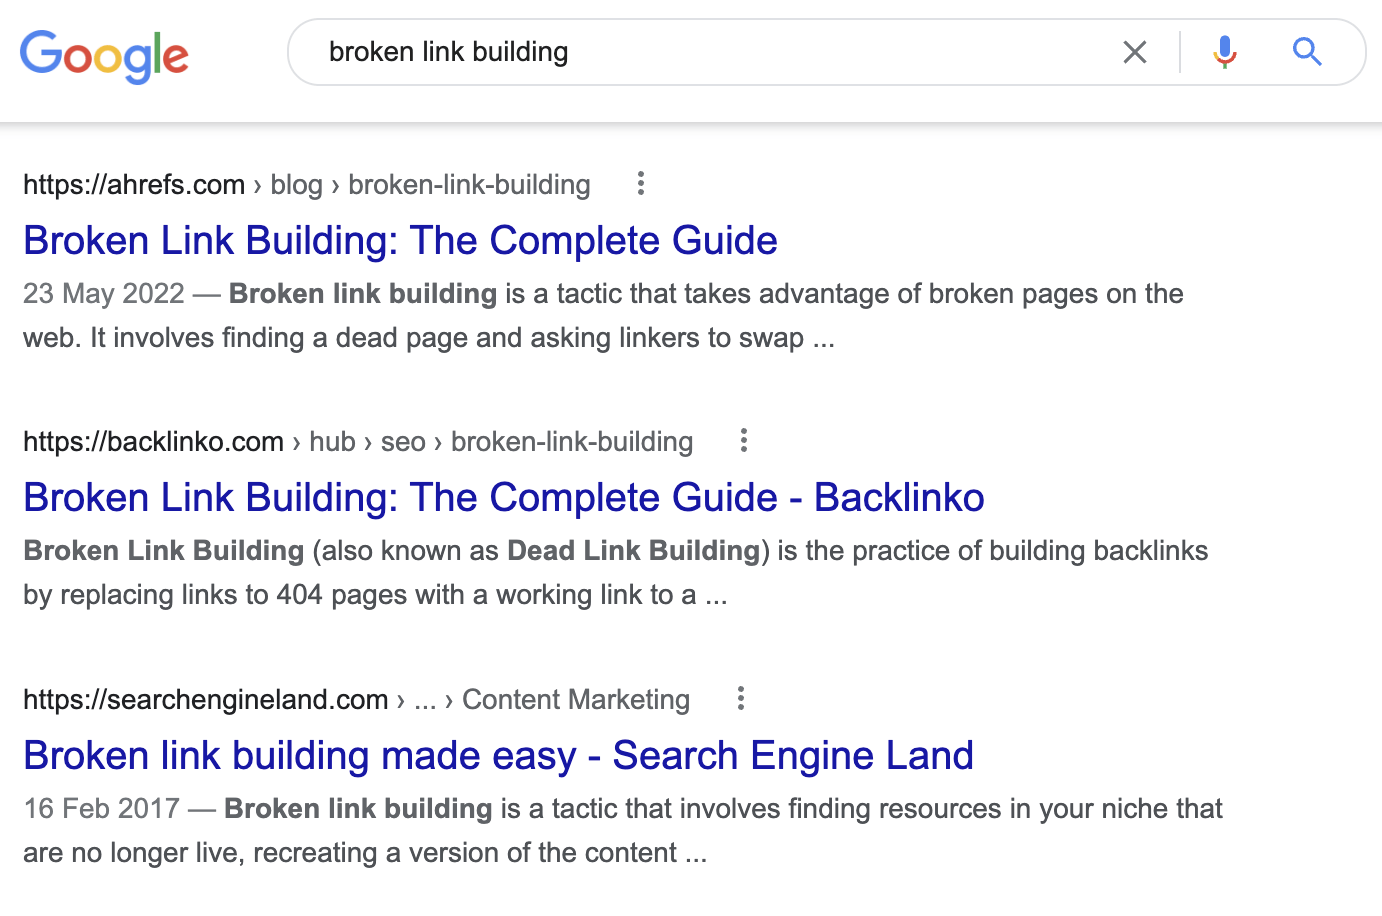 用户搜索 "broken link building" 是为了学习